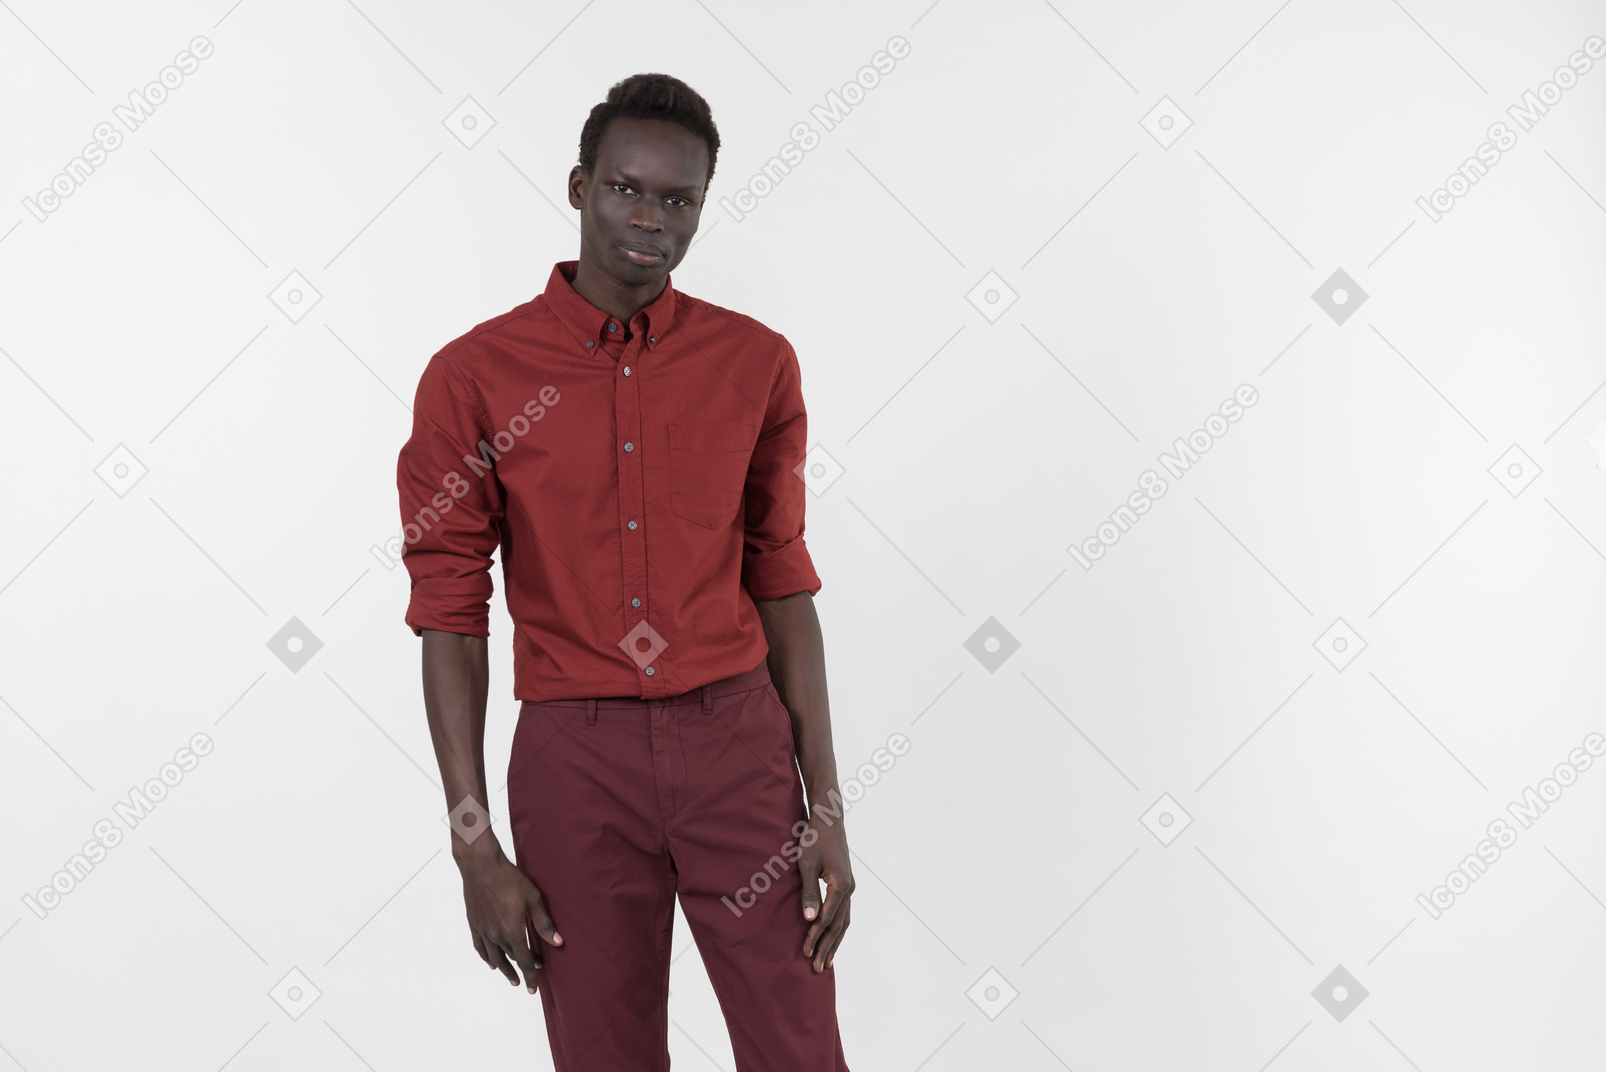 Un jeune homme noir vêtu d'une chemise rouge à manches retroussées et d'un pantalon rouge foncé debout seul sur le fond blanc